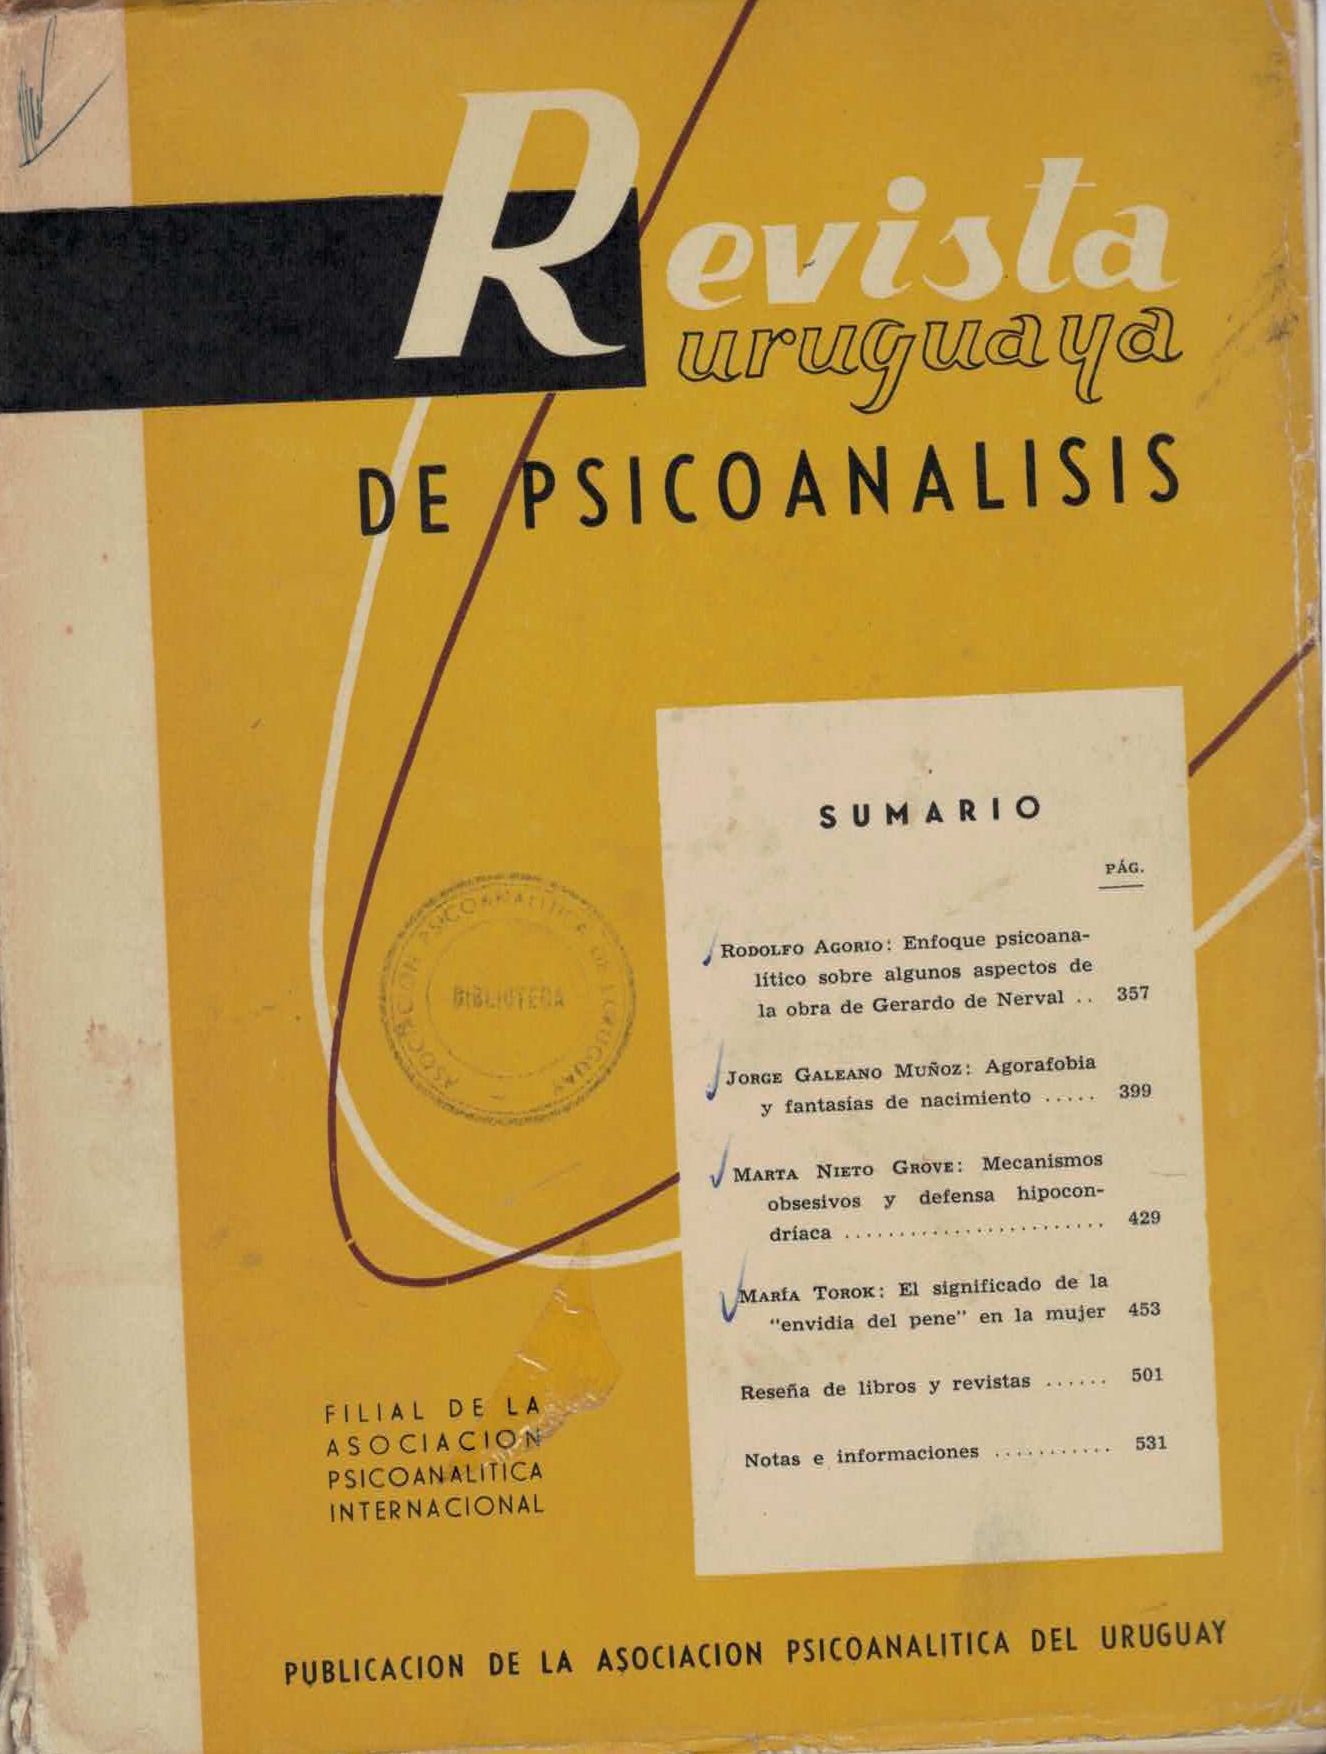 					View Vol. 6 No. 4 (1964): Revista Uruguaya de Psicoanálisis
				